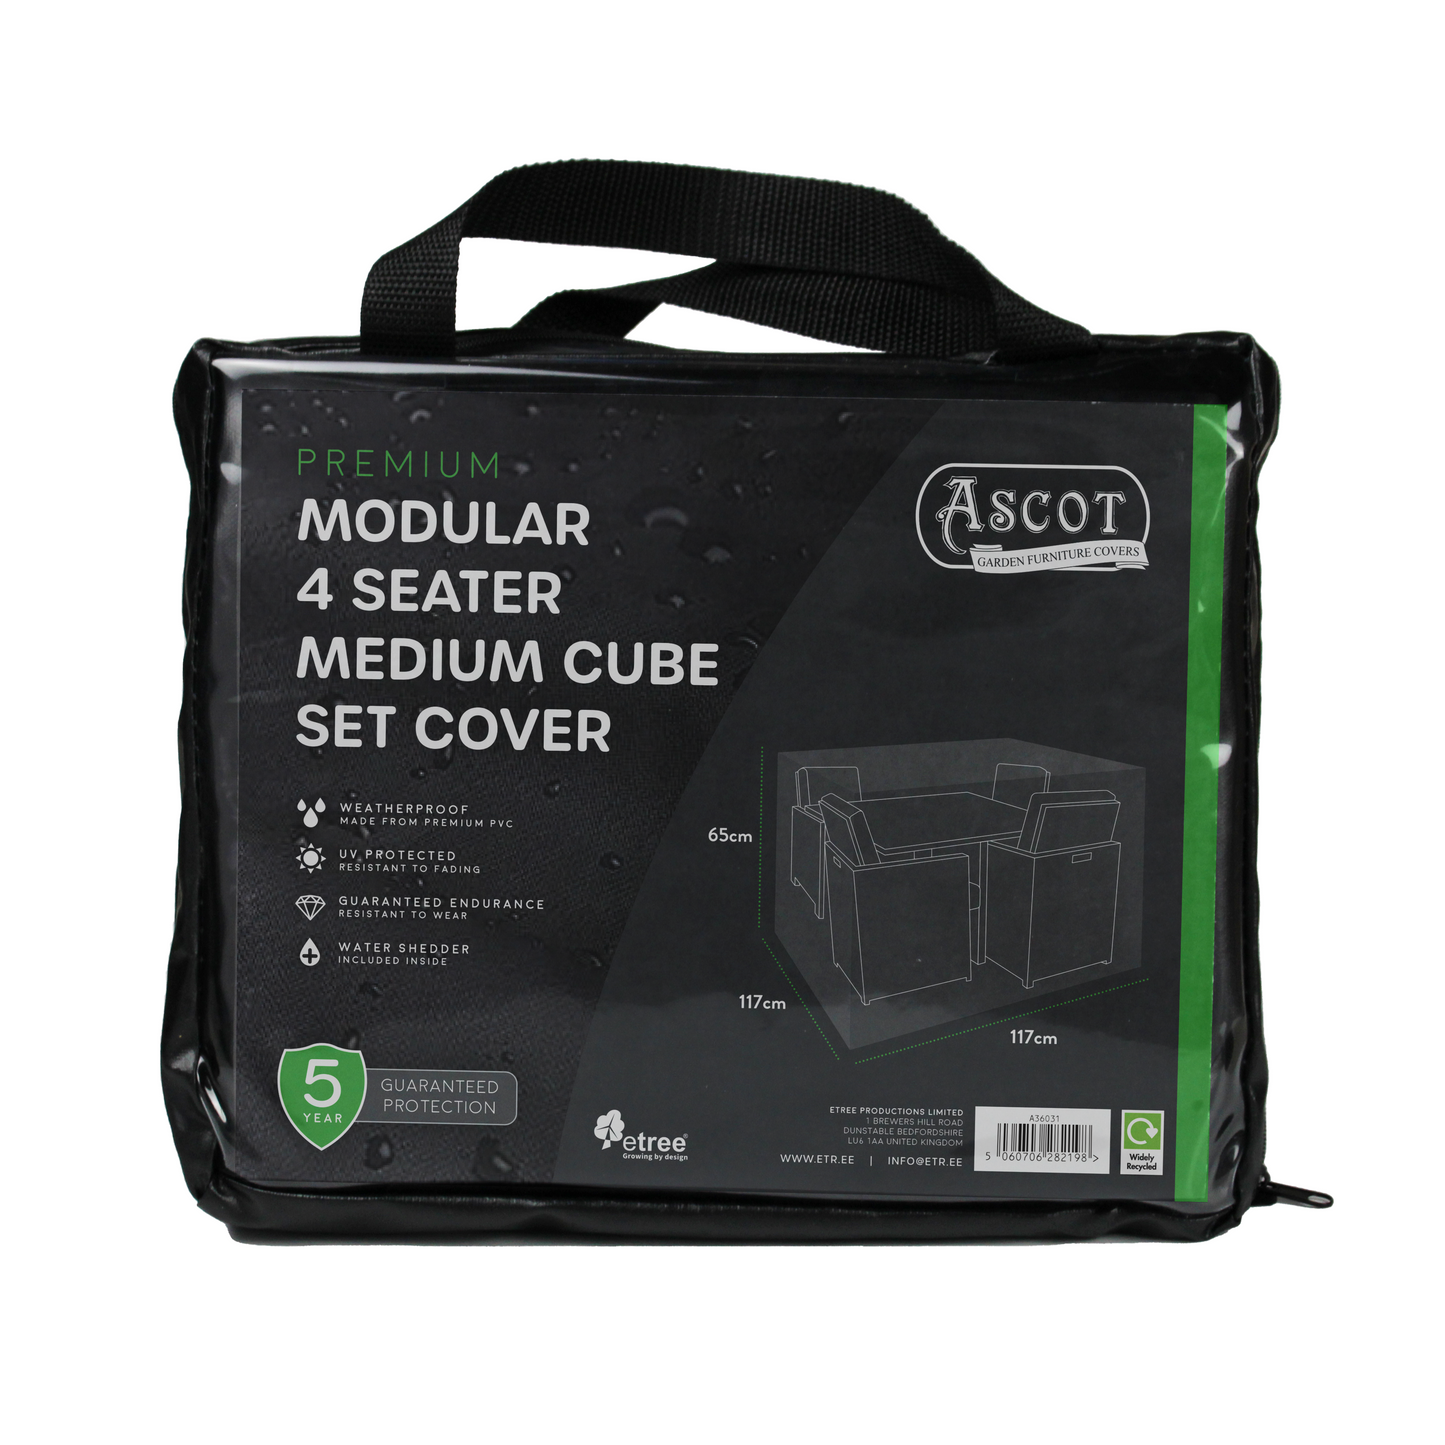 Premium Modular 4 Seater Cube Set Cover Medium - 117 X 117 X 65 H